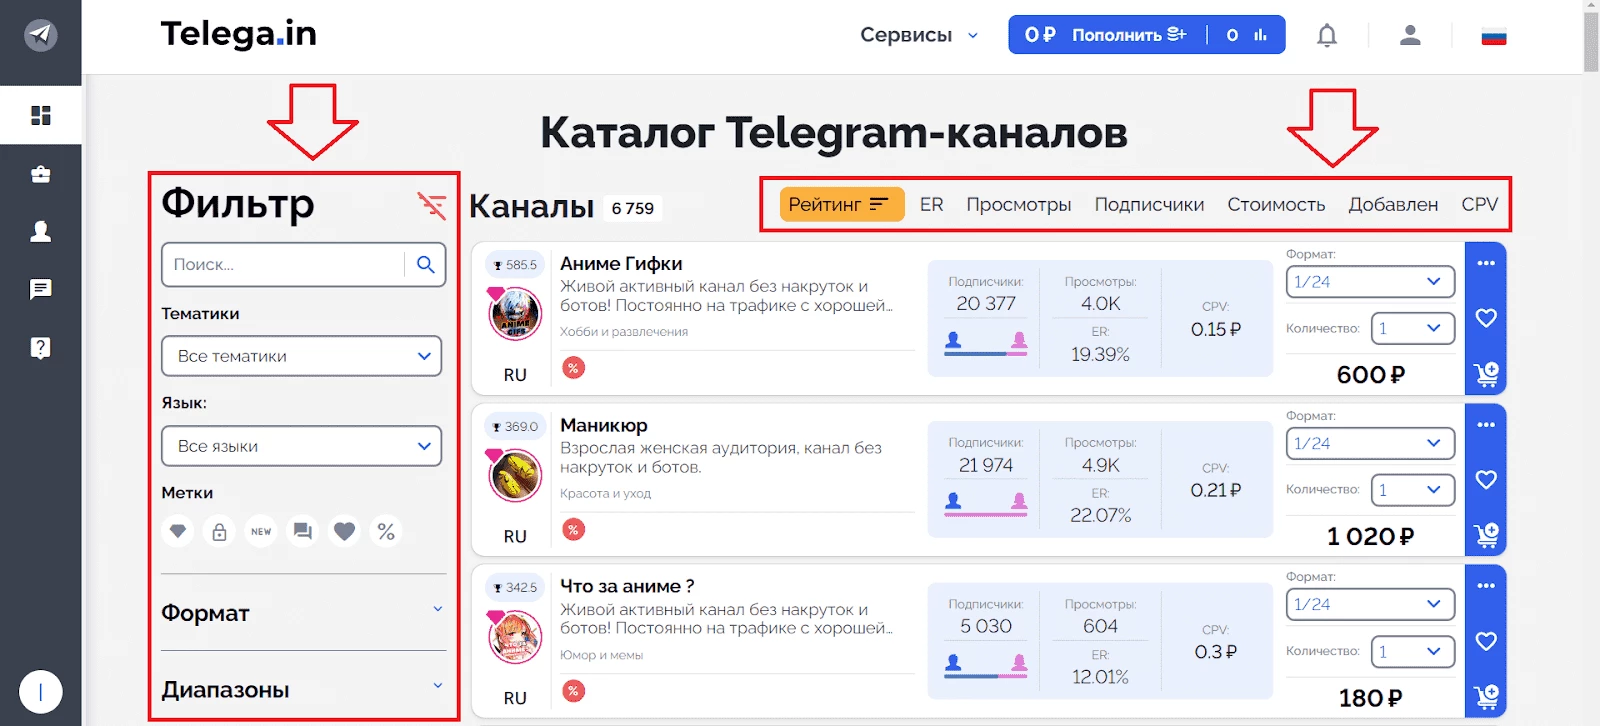 Интерфейс Telega.in для поиска каналов и групп для инвайтинга в Телеграм